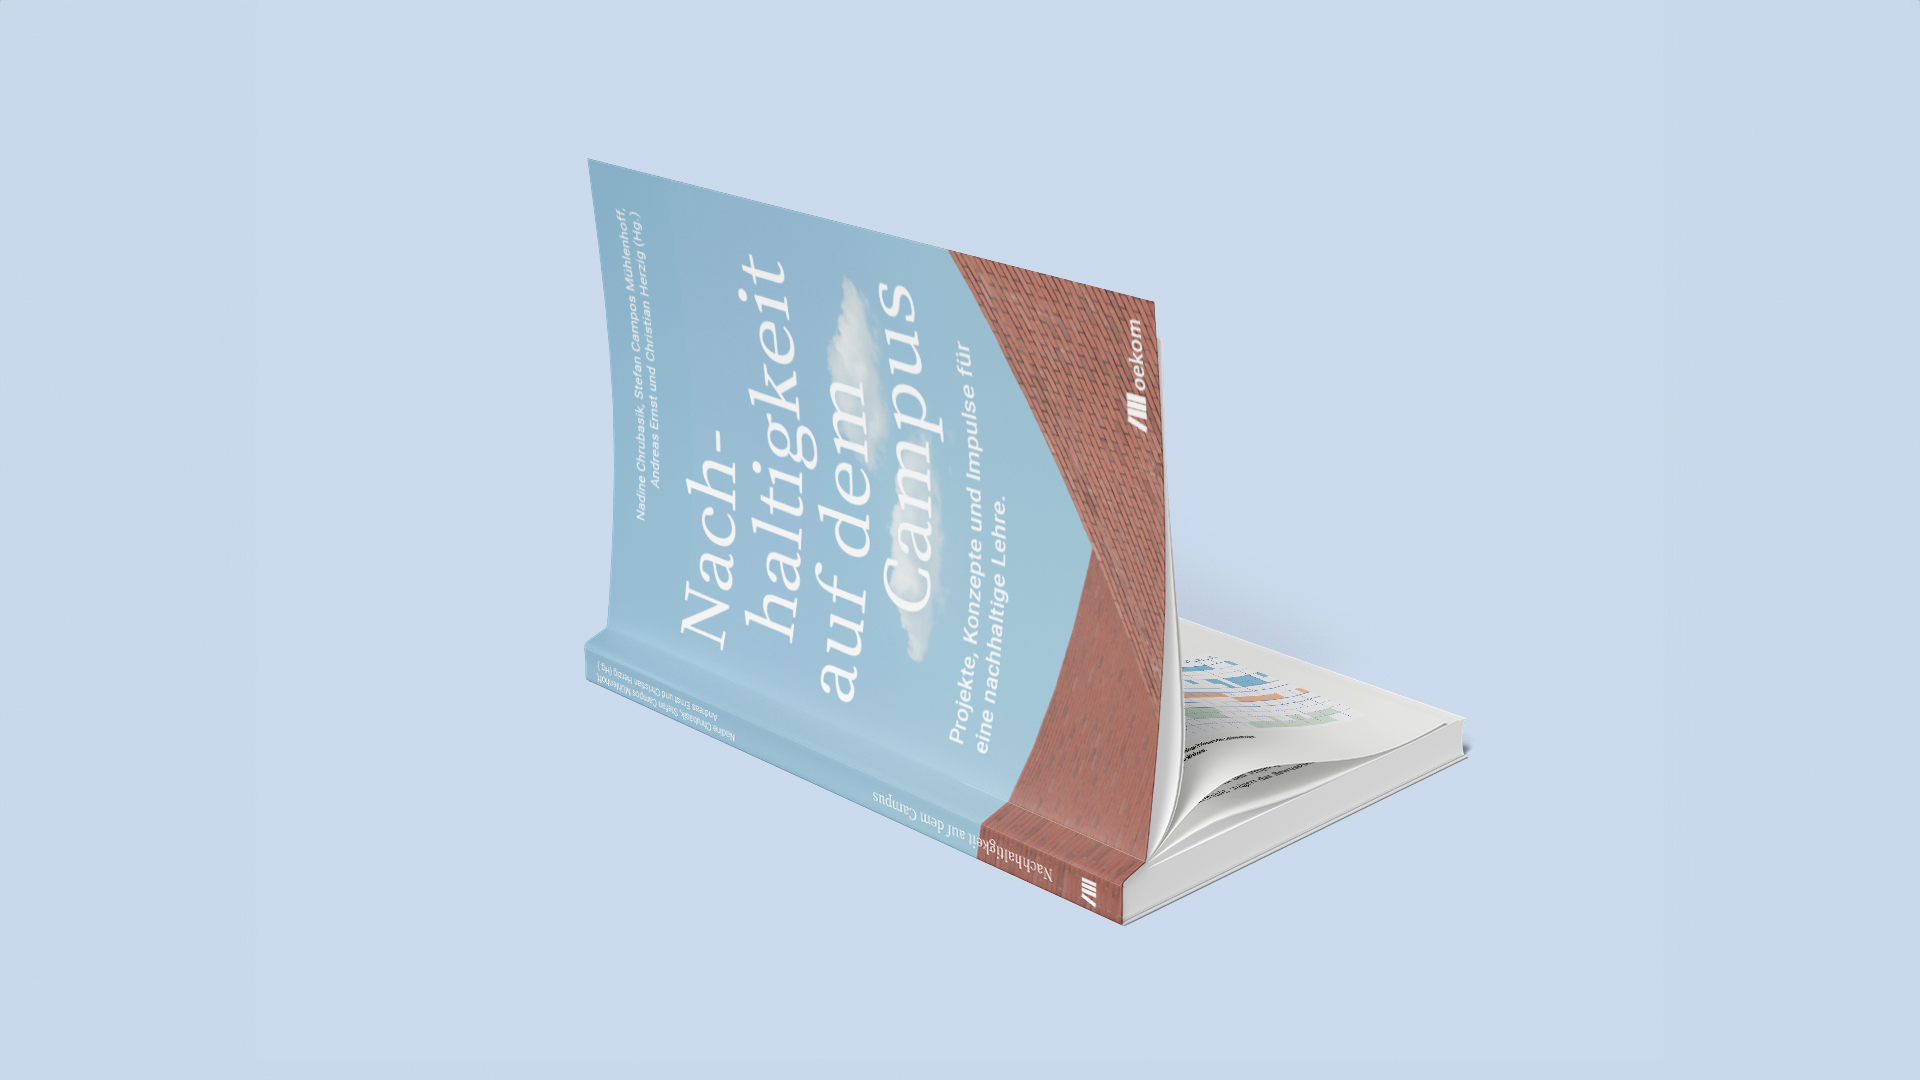 book-mockup-nachhaltigkeit-auf-dem-campus-uni-kassel-buchgestaltung-grafikdesign-wissenschaftskommunikation-jule-helene-leinpinsel-01